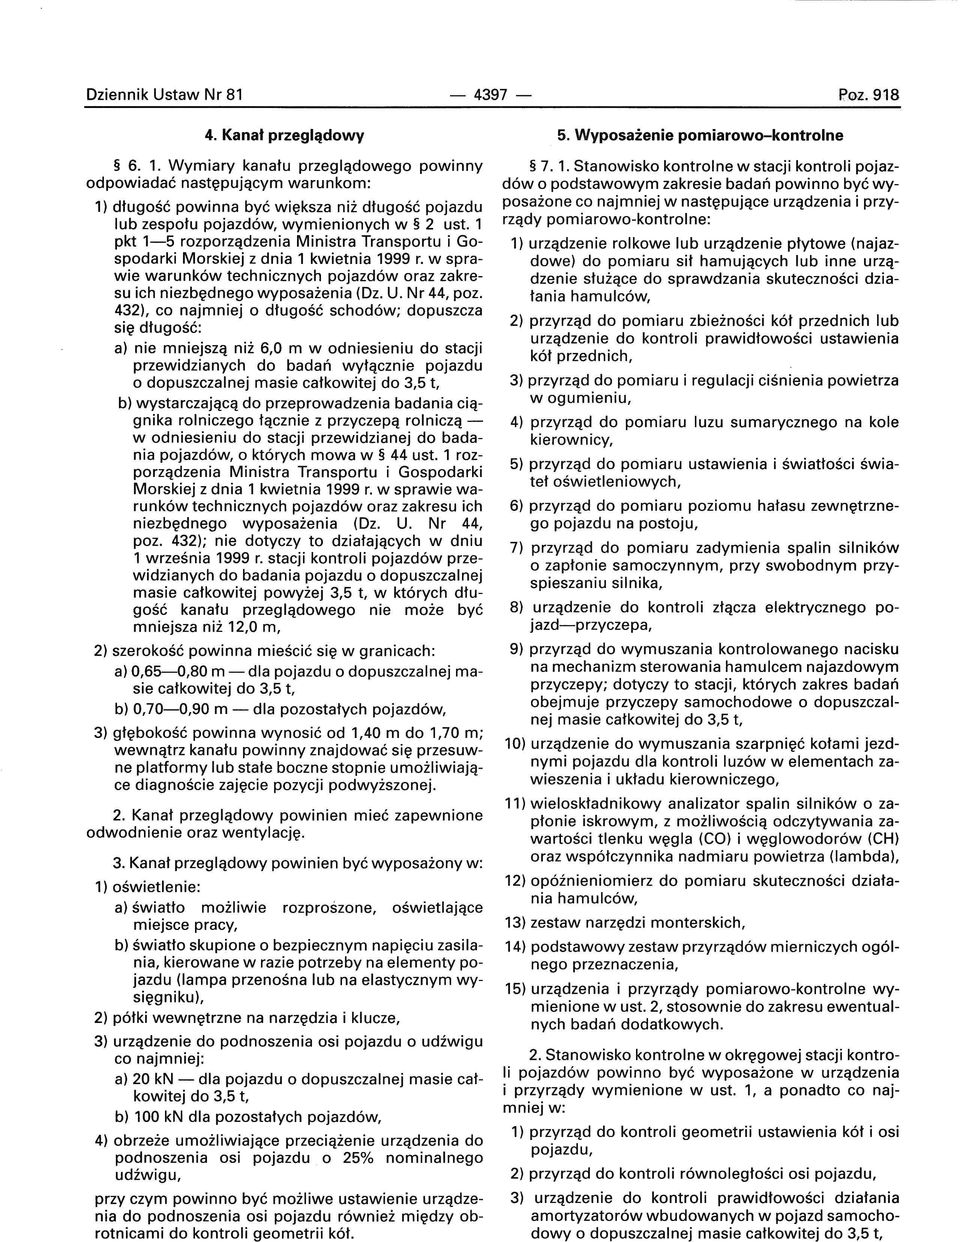 1 pkt 1-5 rozporządzenia Ministra Transportu i Gospodarki Morskiej z dnia 1 kwietnia 1999 r. w sprawie warunków technicznych pojazdów oraz zakresu ich niezbędnego wyposażenia (Dz. U. Nr 44, poz.